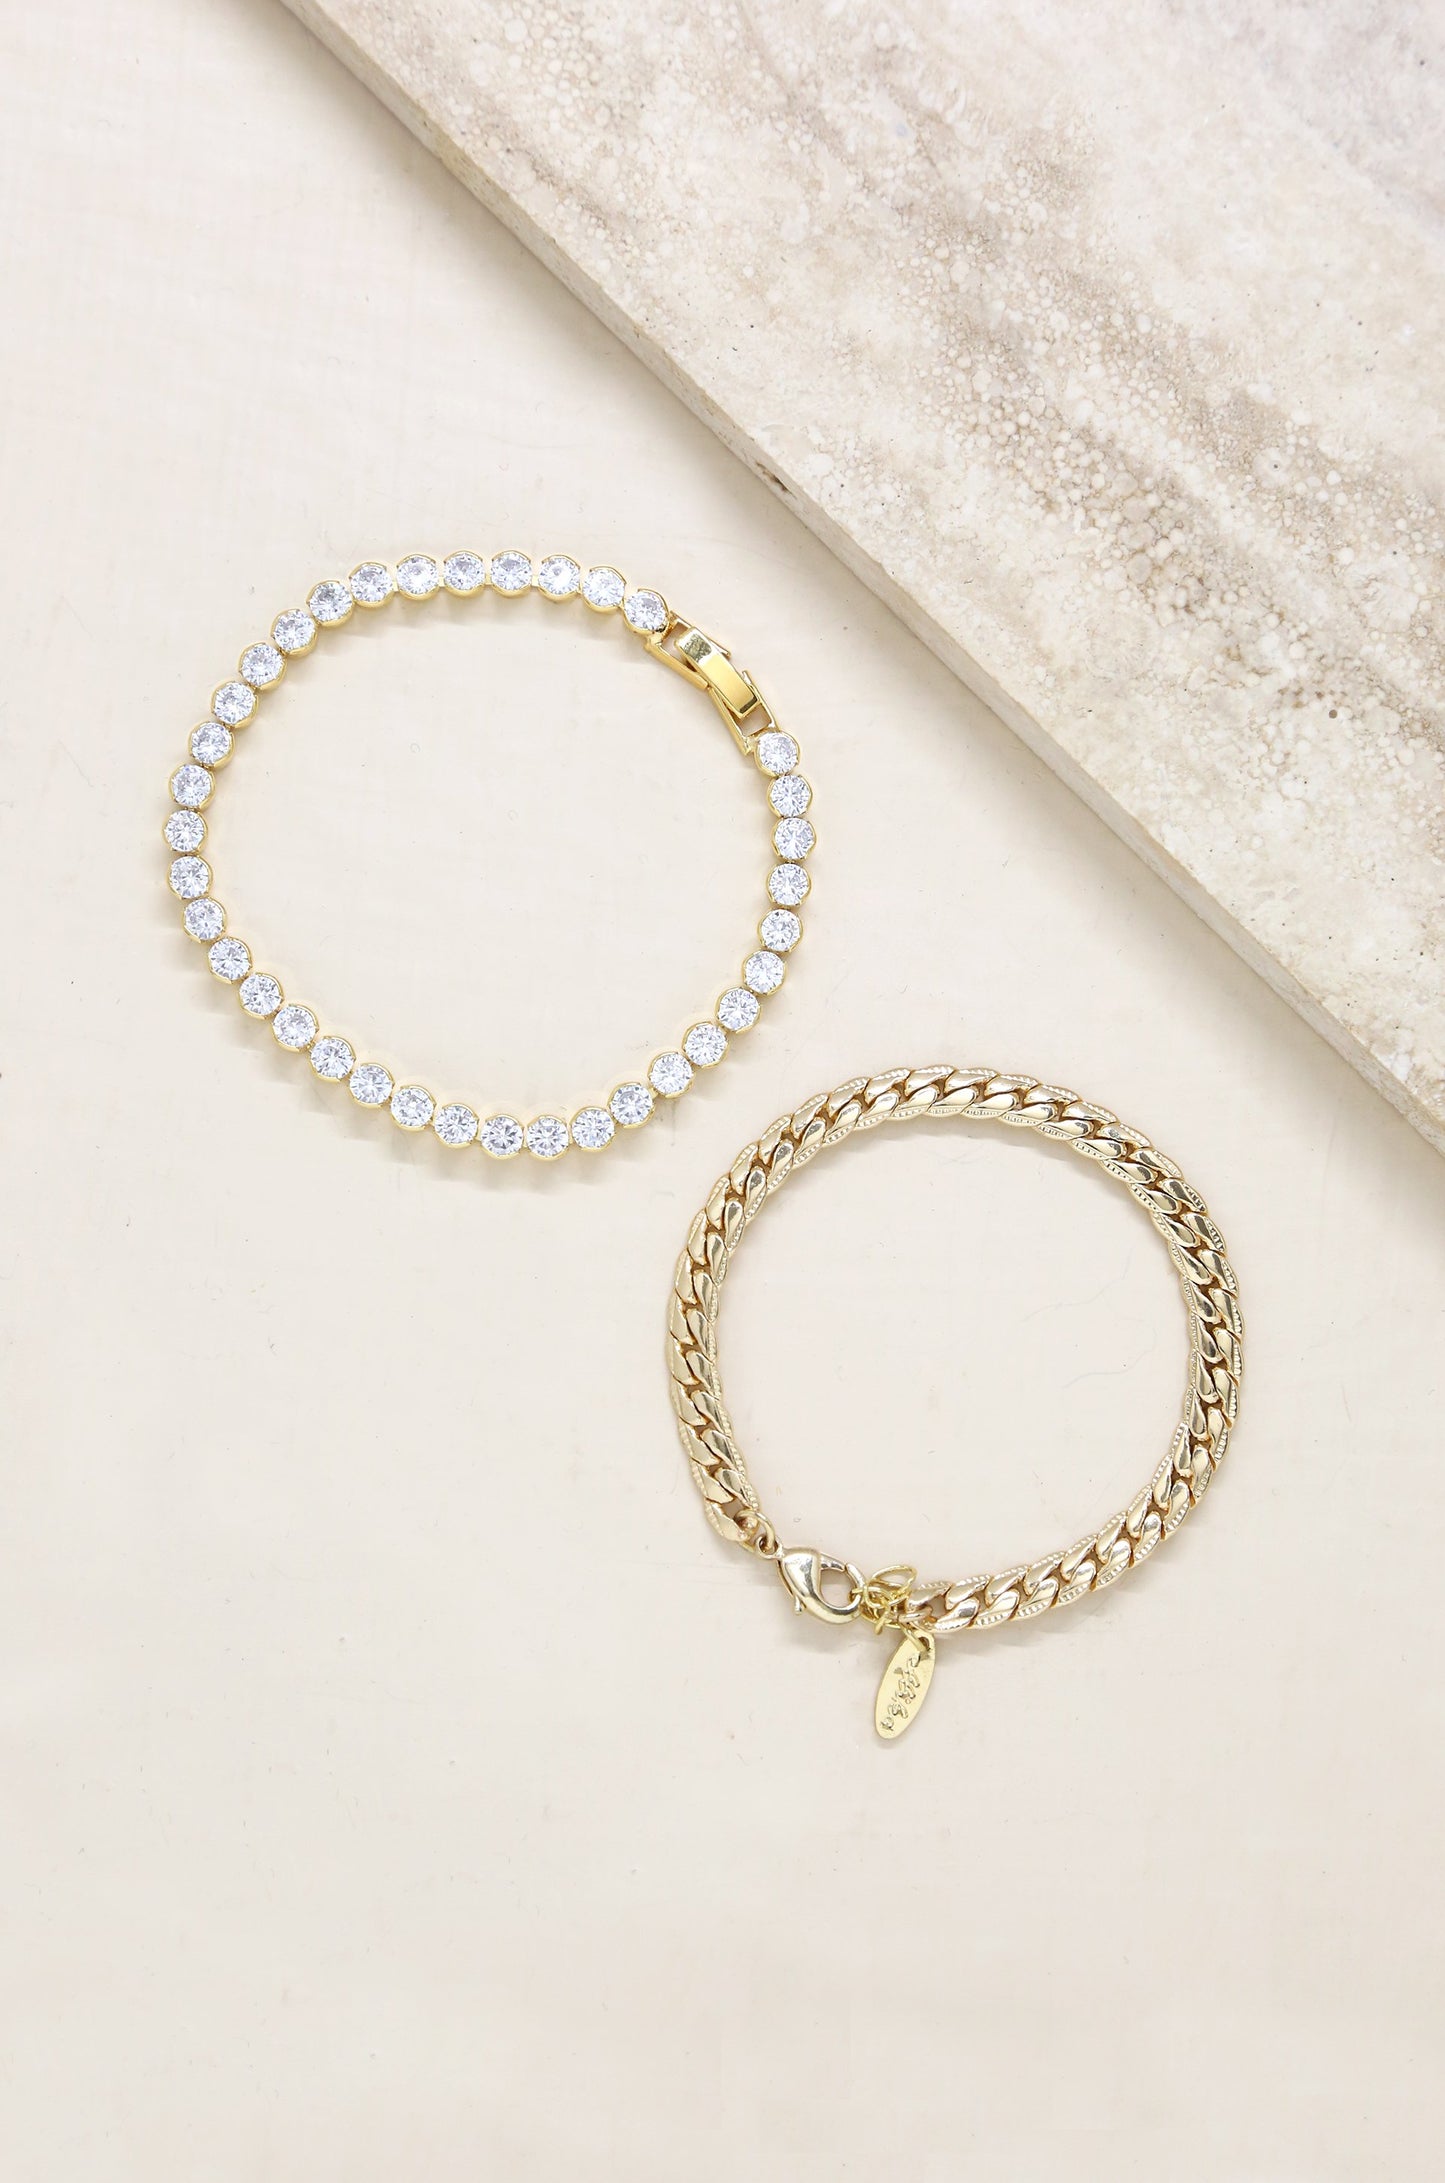 Crystal Chain & 18k Gold Plated Link Bracelet Set on slate background  